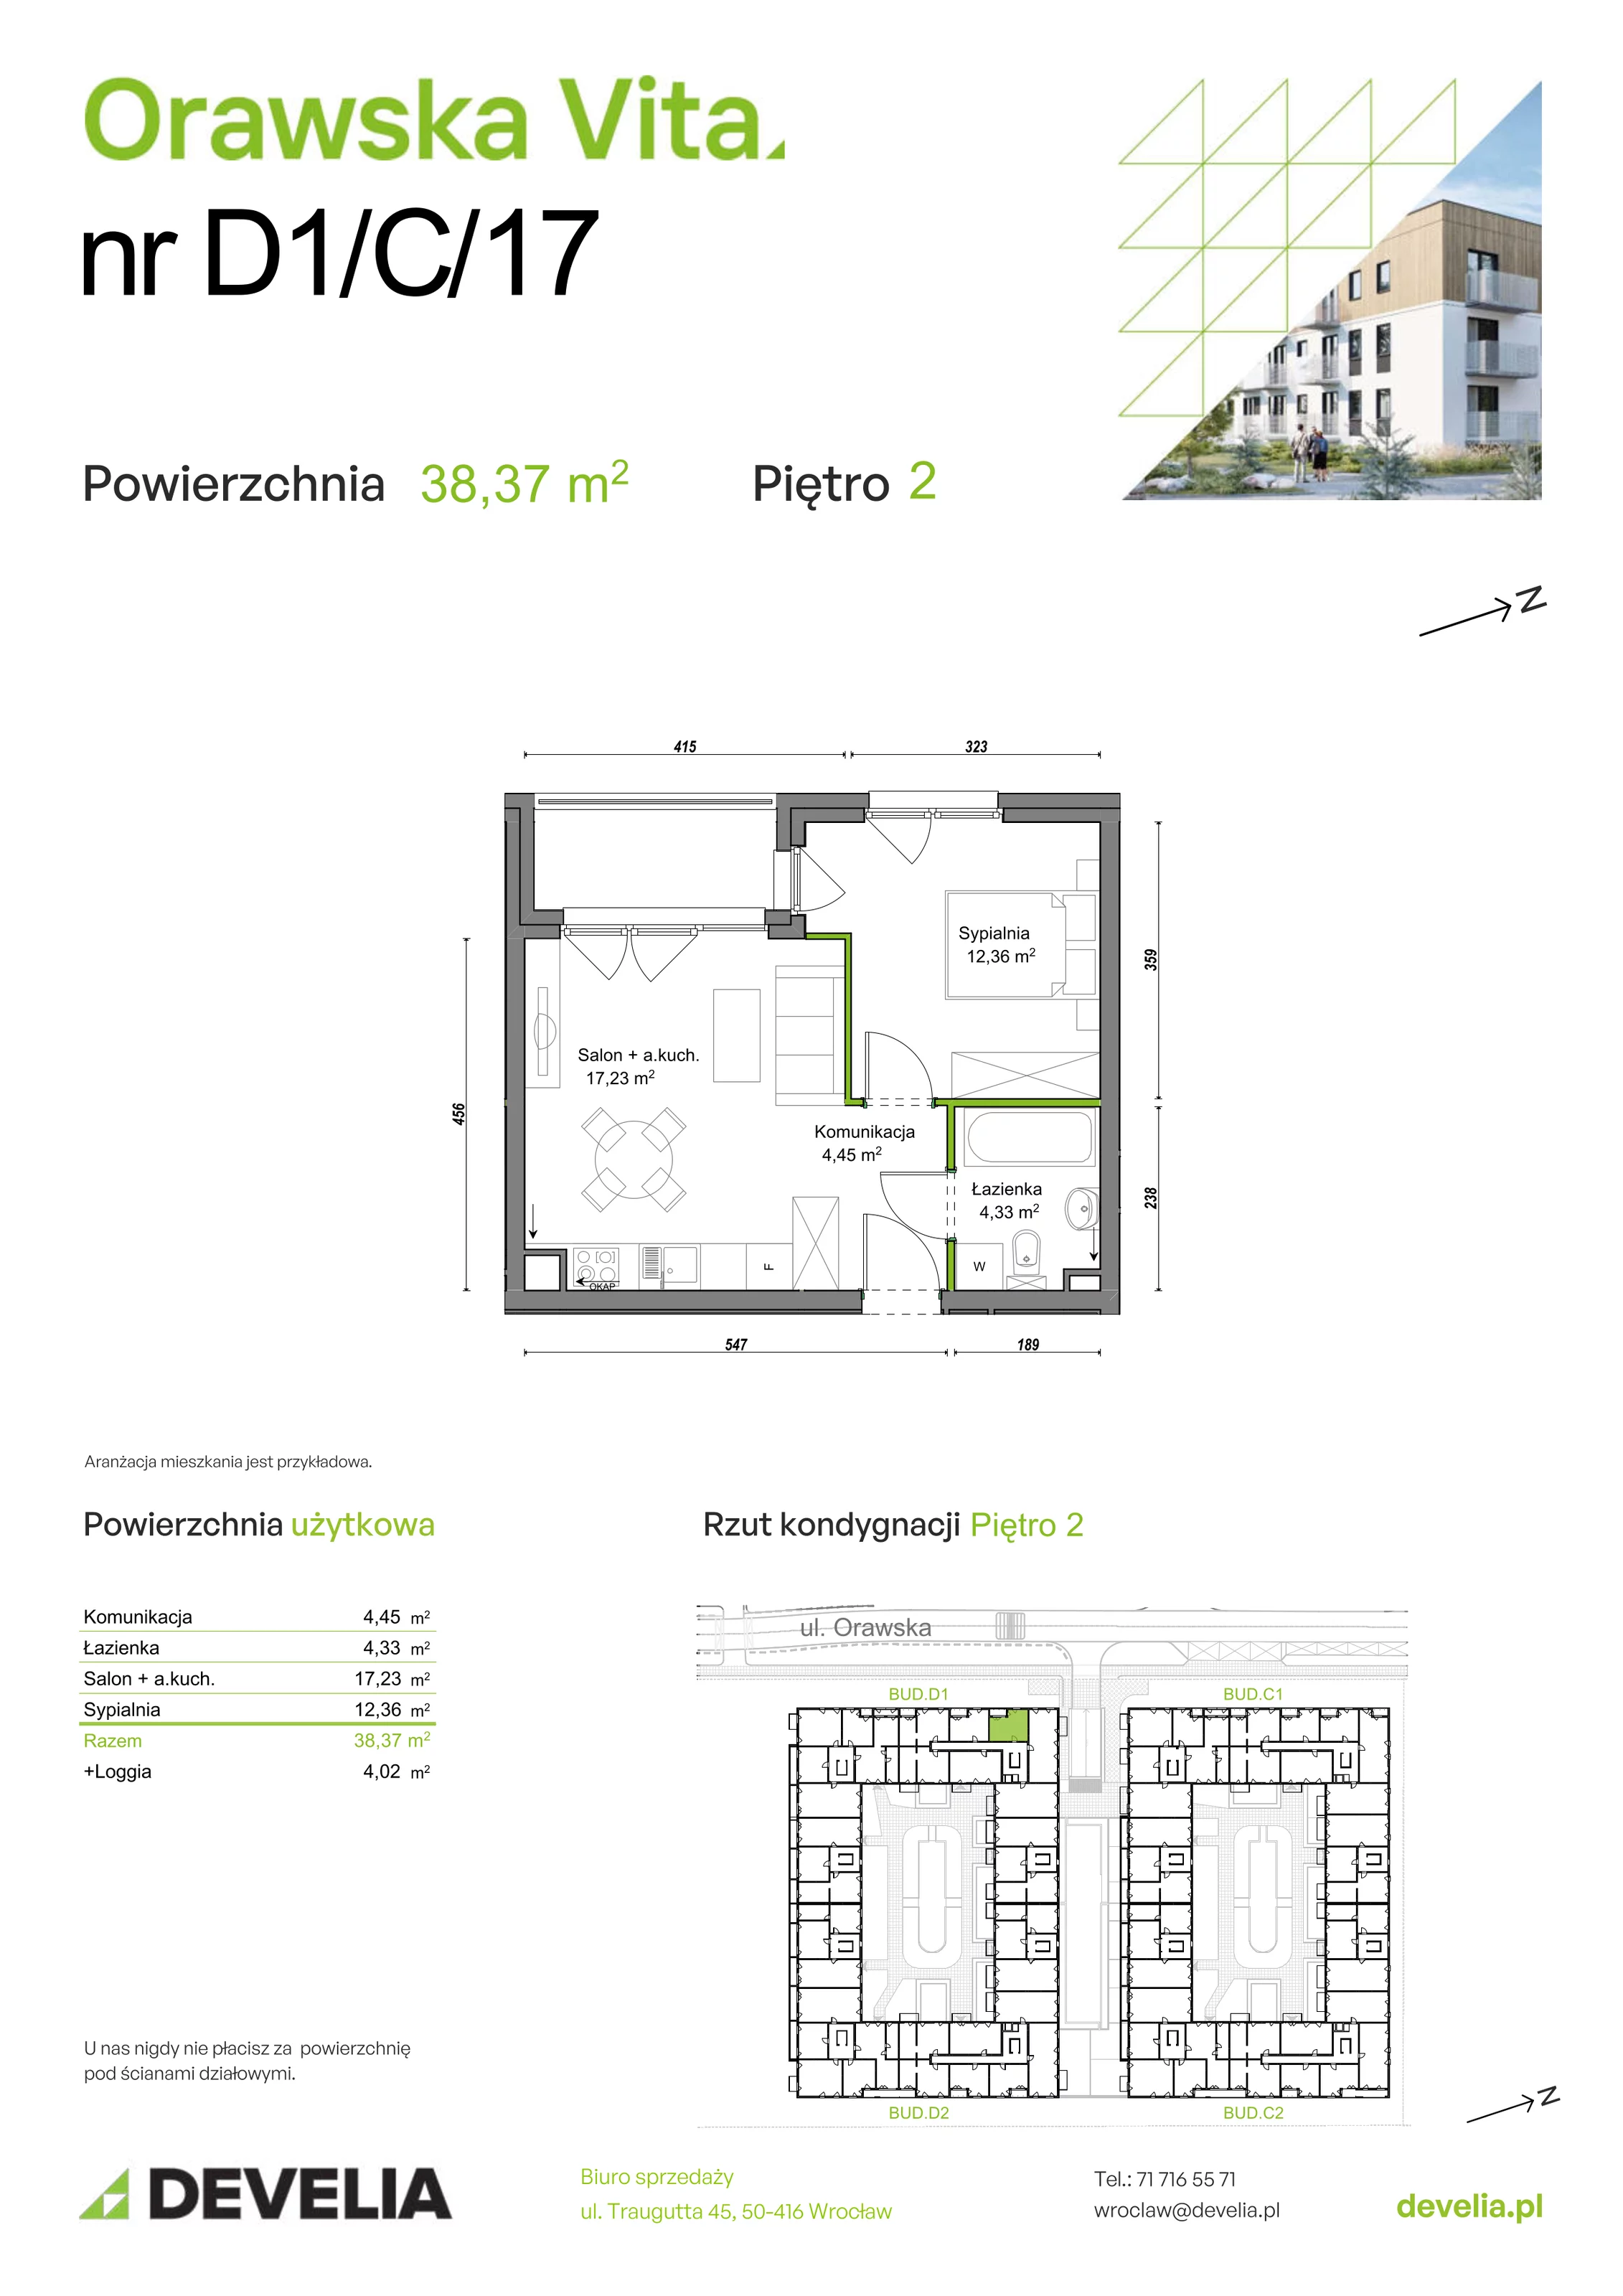 Mieszkanie 38,37 m², piętro 2, oferta nr D1/C/17, Orawska Vita, Wrocław, Ołtaszyn, Krzyki, ul. Orawska 73